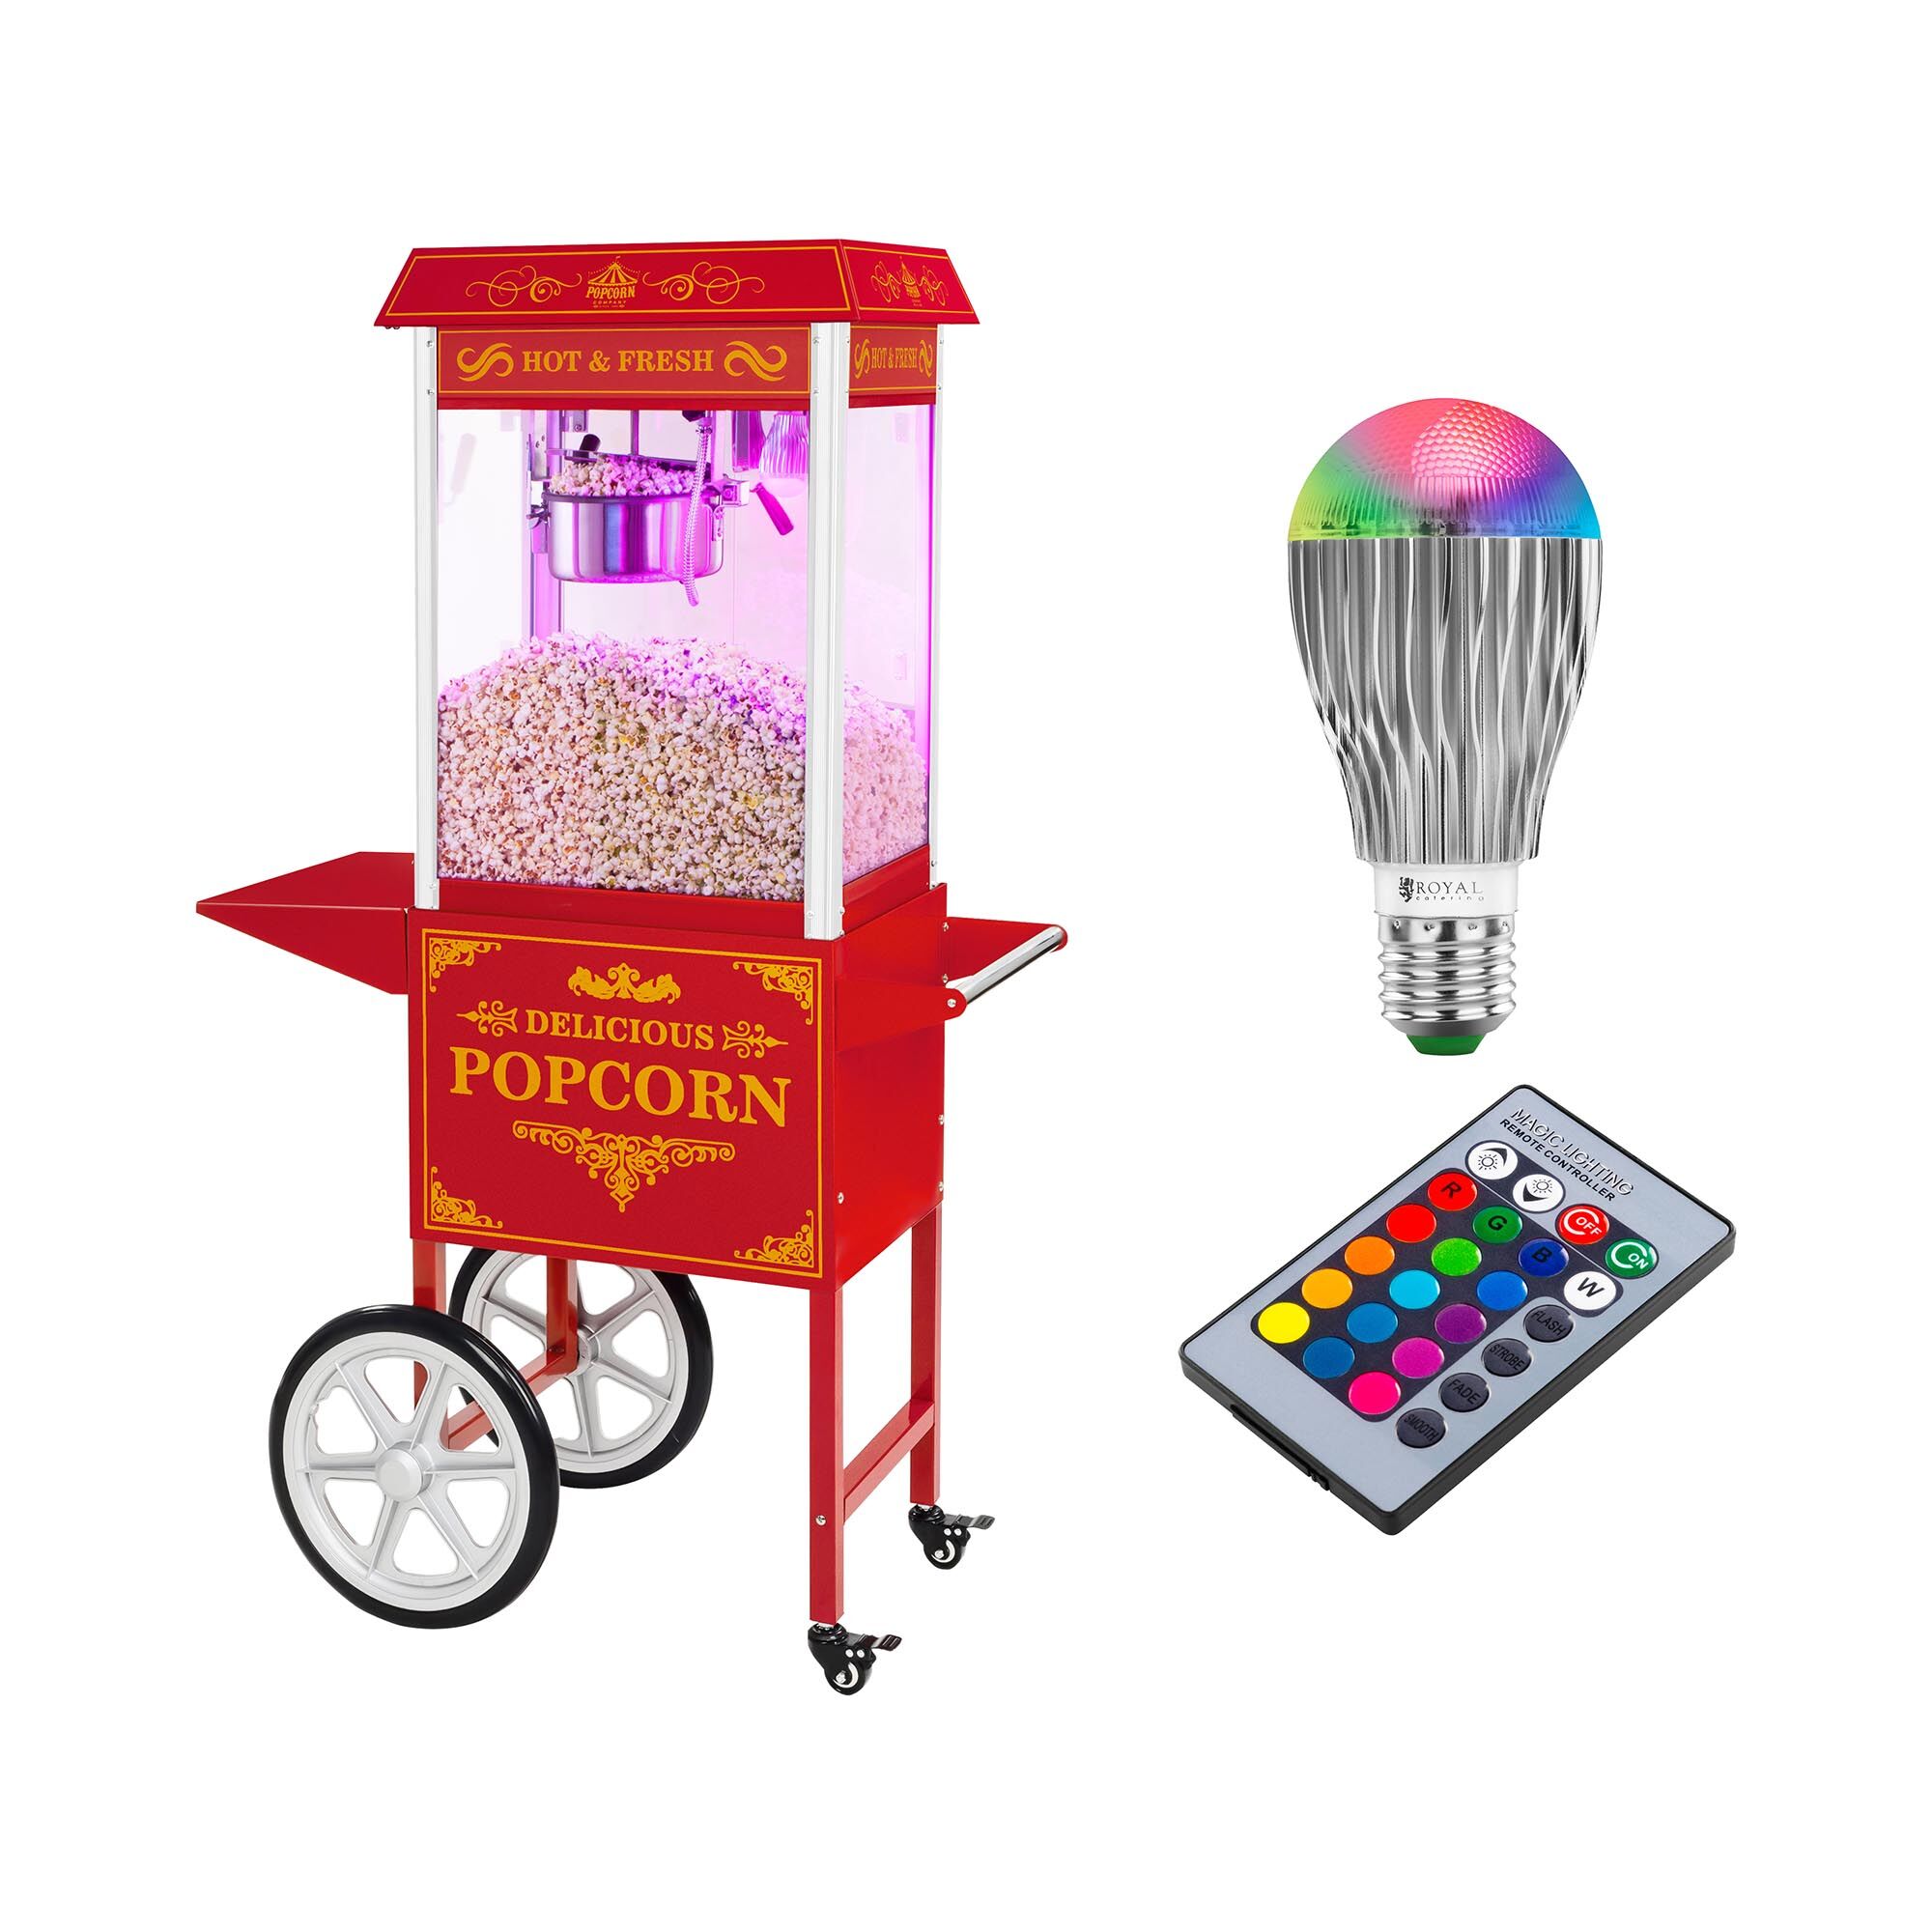 Royal Catering Stroj na popkorn s vozíkem a LED osvětlením - retro vzhled - červený RCPW-16.3 Popcorn Machine LED Set